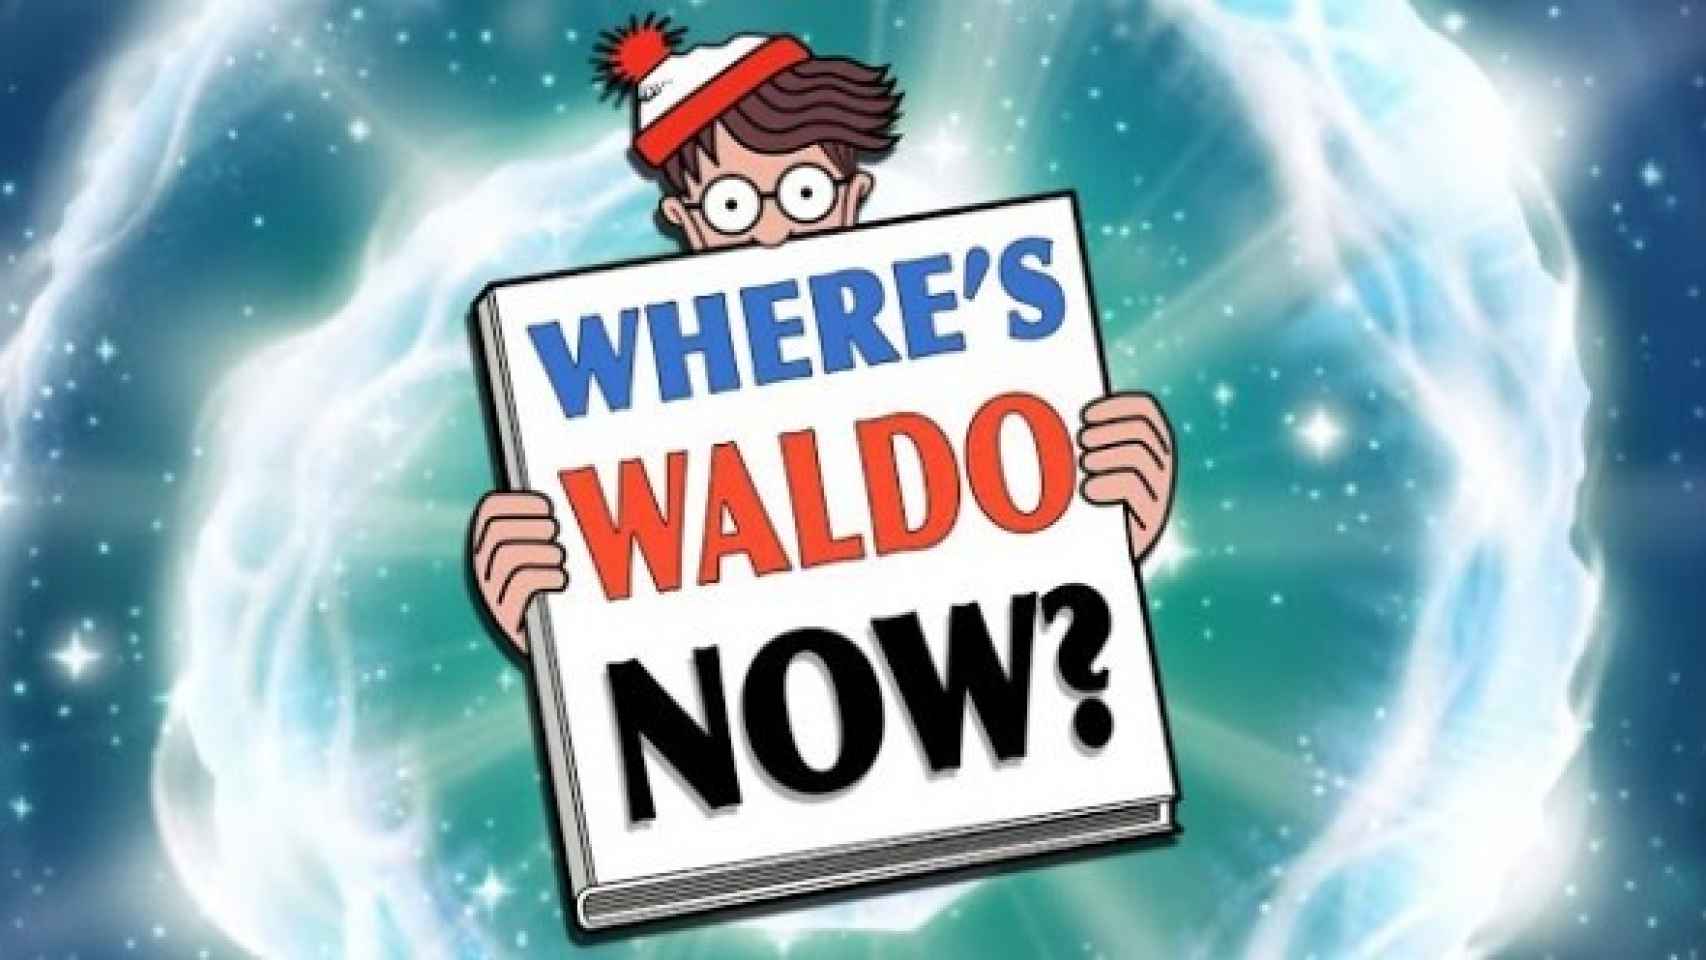 ¿Dónde está Wally ahora? nos recupera a nuestro turista en el tiempo favorito